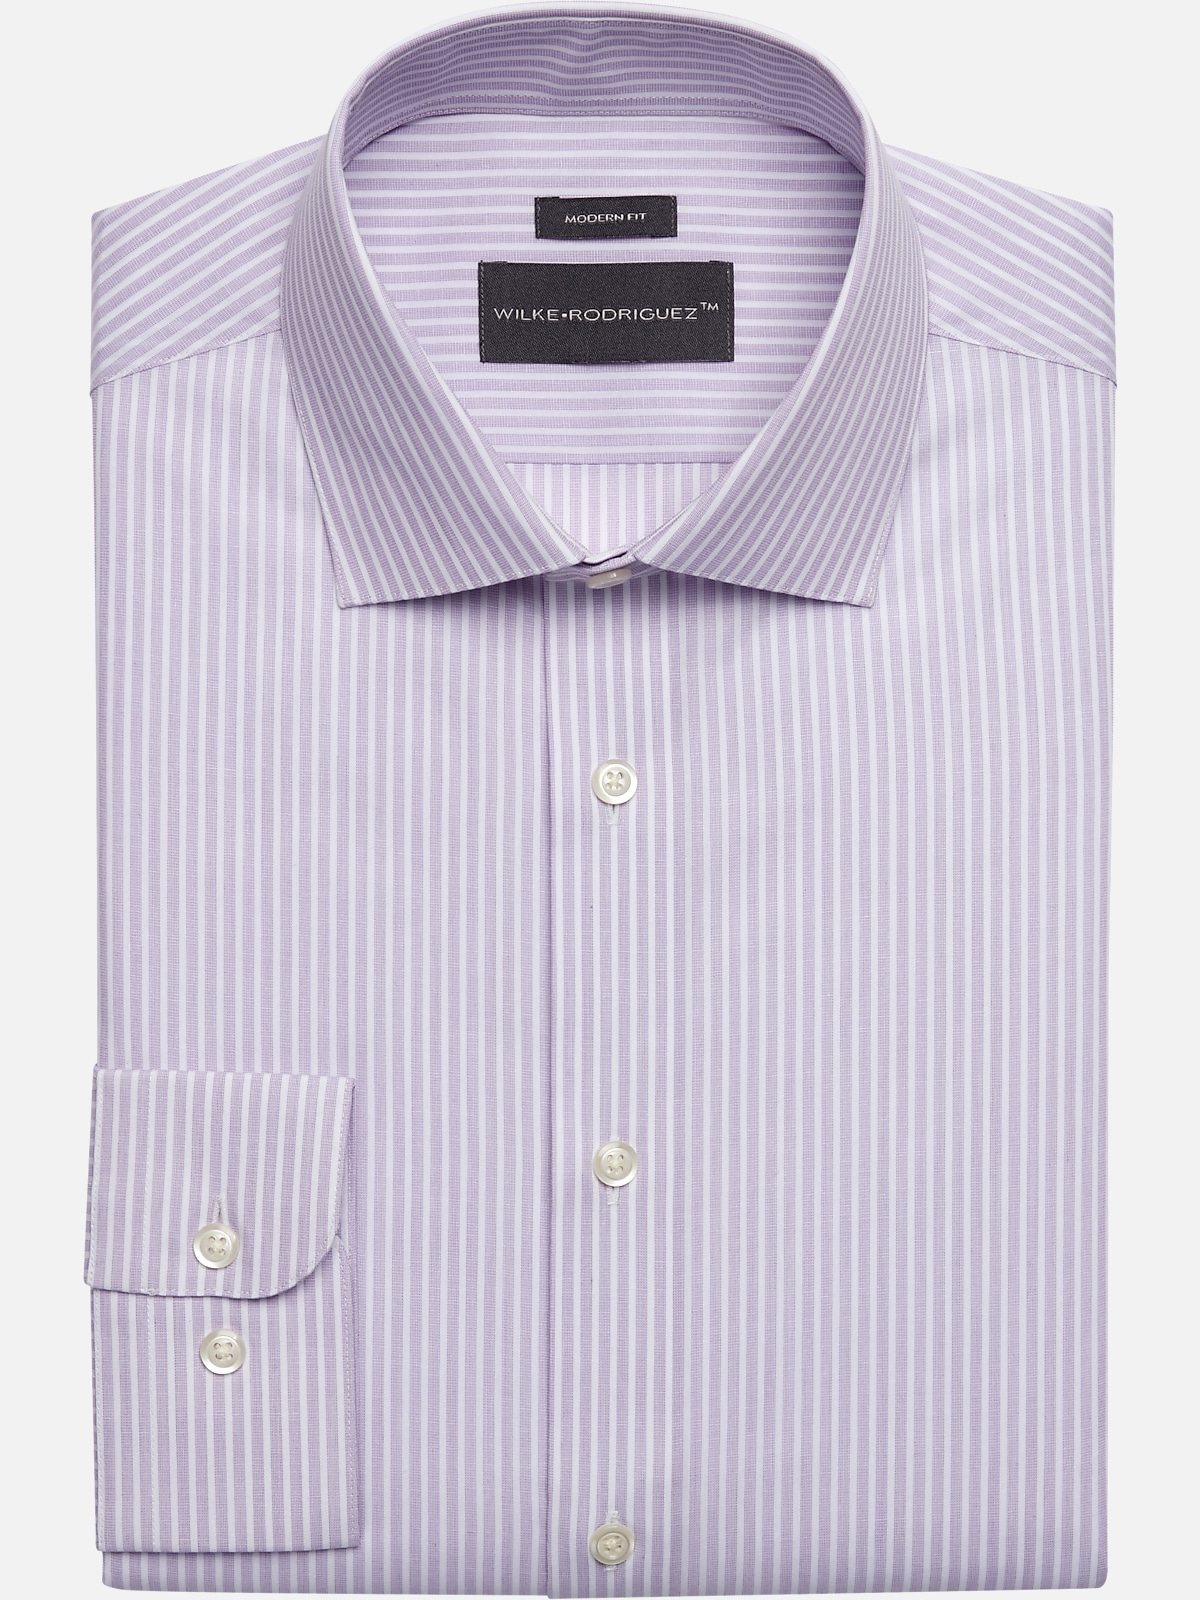 Wilke-Rodriguez Men's Modern Fit Spread Collar Stripe Dress Shirt at Men's Wearhouse, Lavender Stripe / Purple - Size: 17 32/33